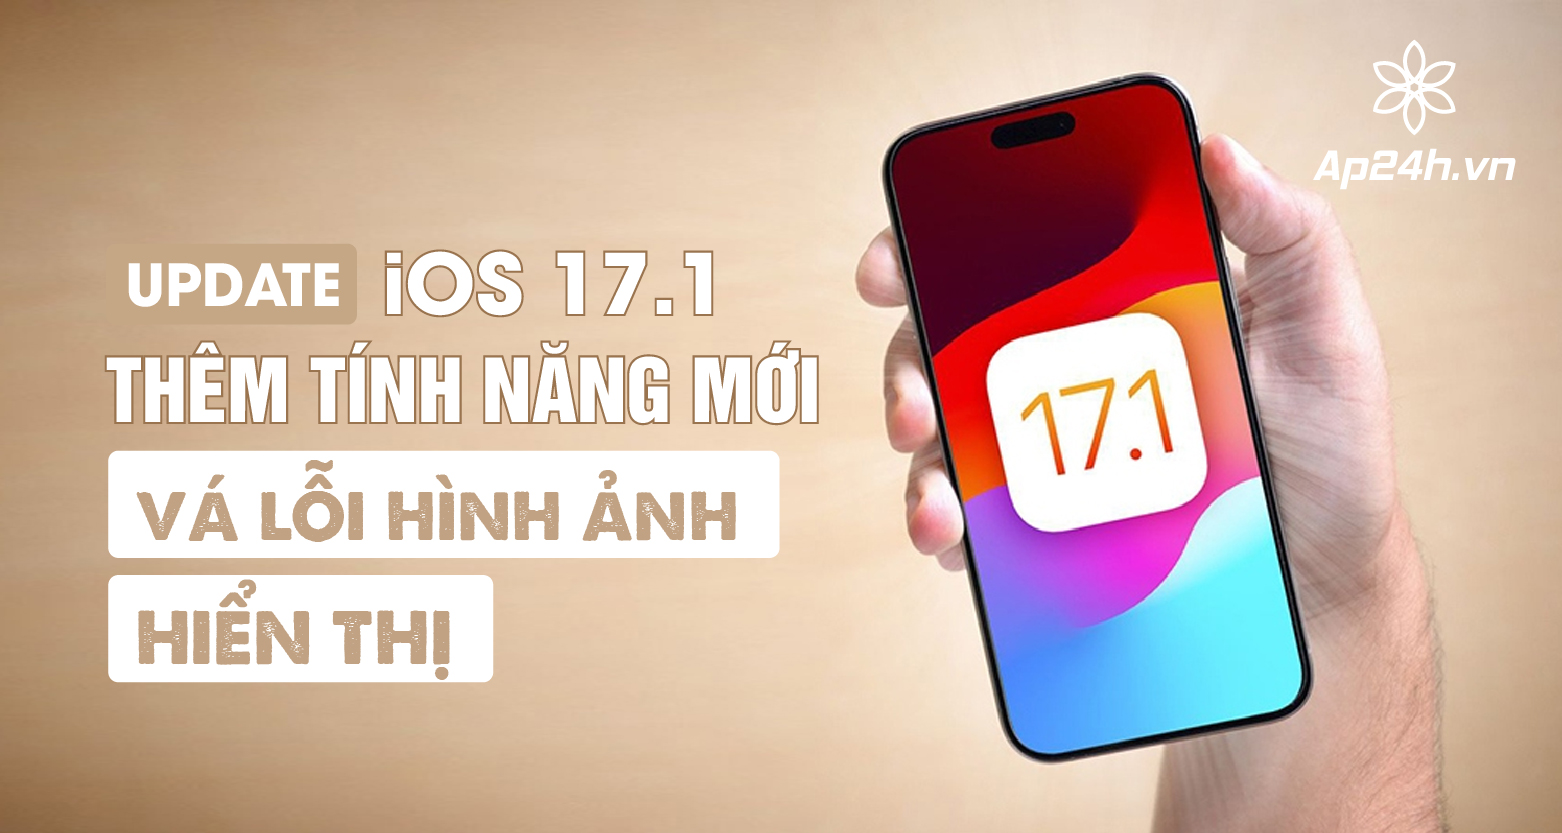 iOS 17.1 thêm tính năng mới và vá lỗi hình ảnh hiển thị